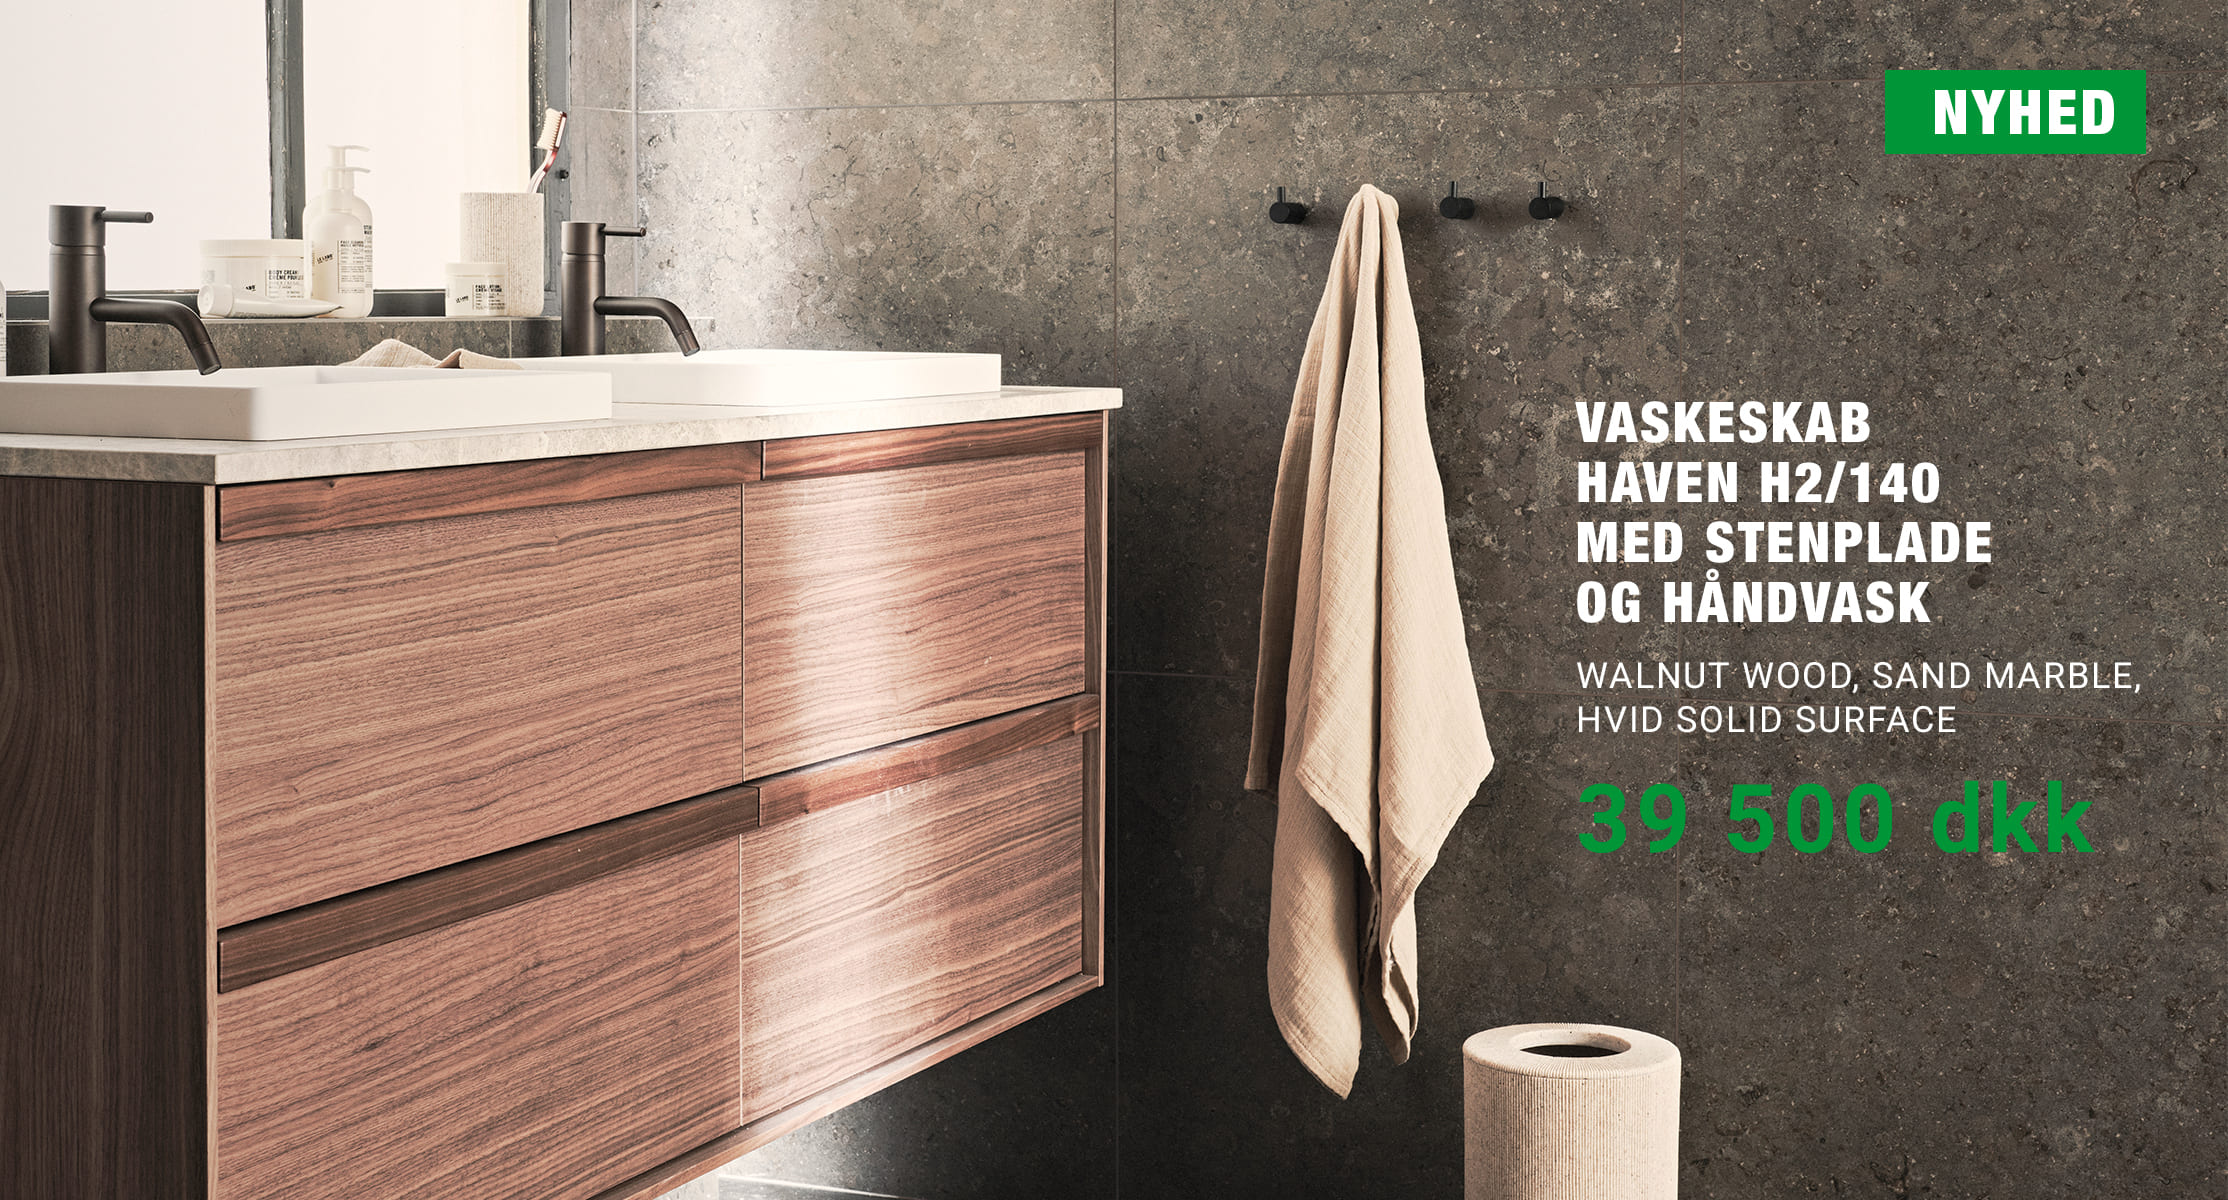 https://www.gulvogfliseeksperten.dk/da/articles/2.84.11063/vaskeskab-haven-h2140-med-stenplade-og-handvask